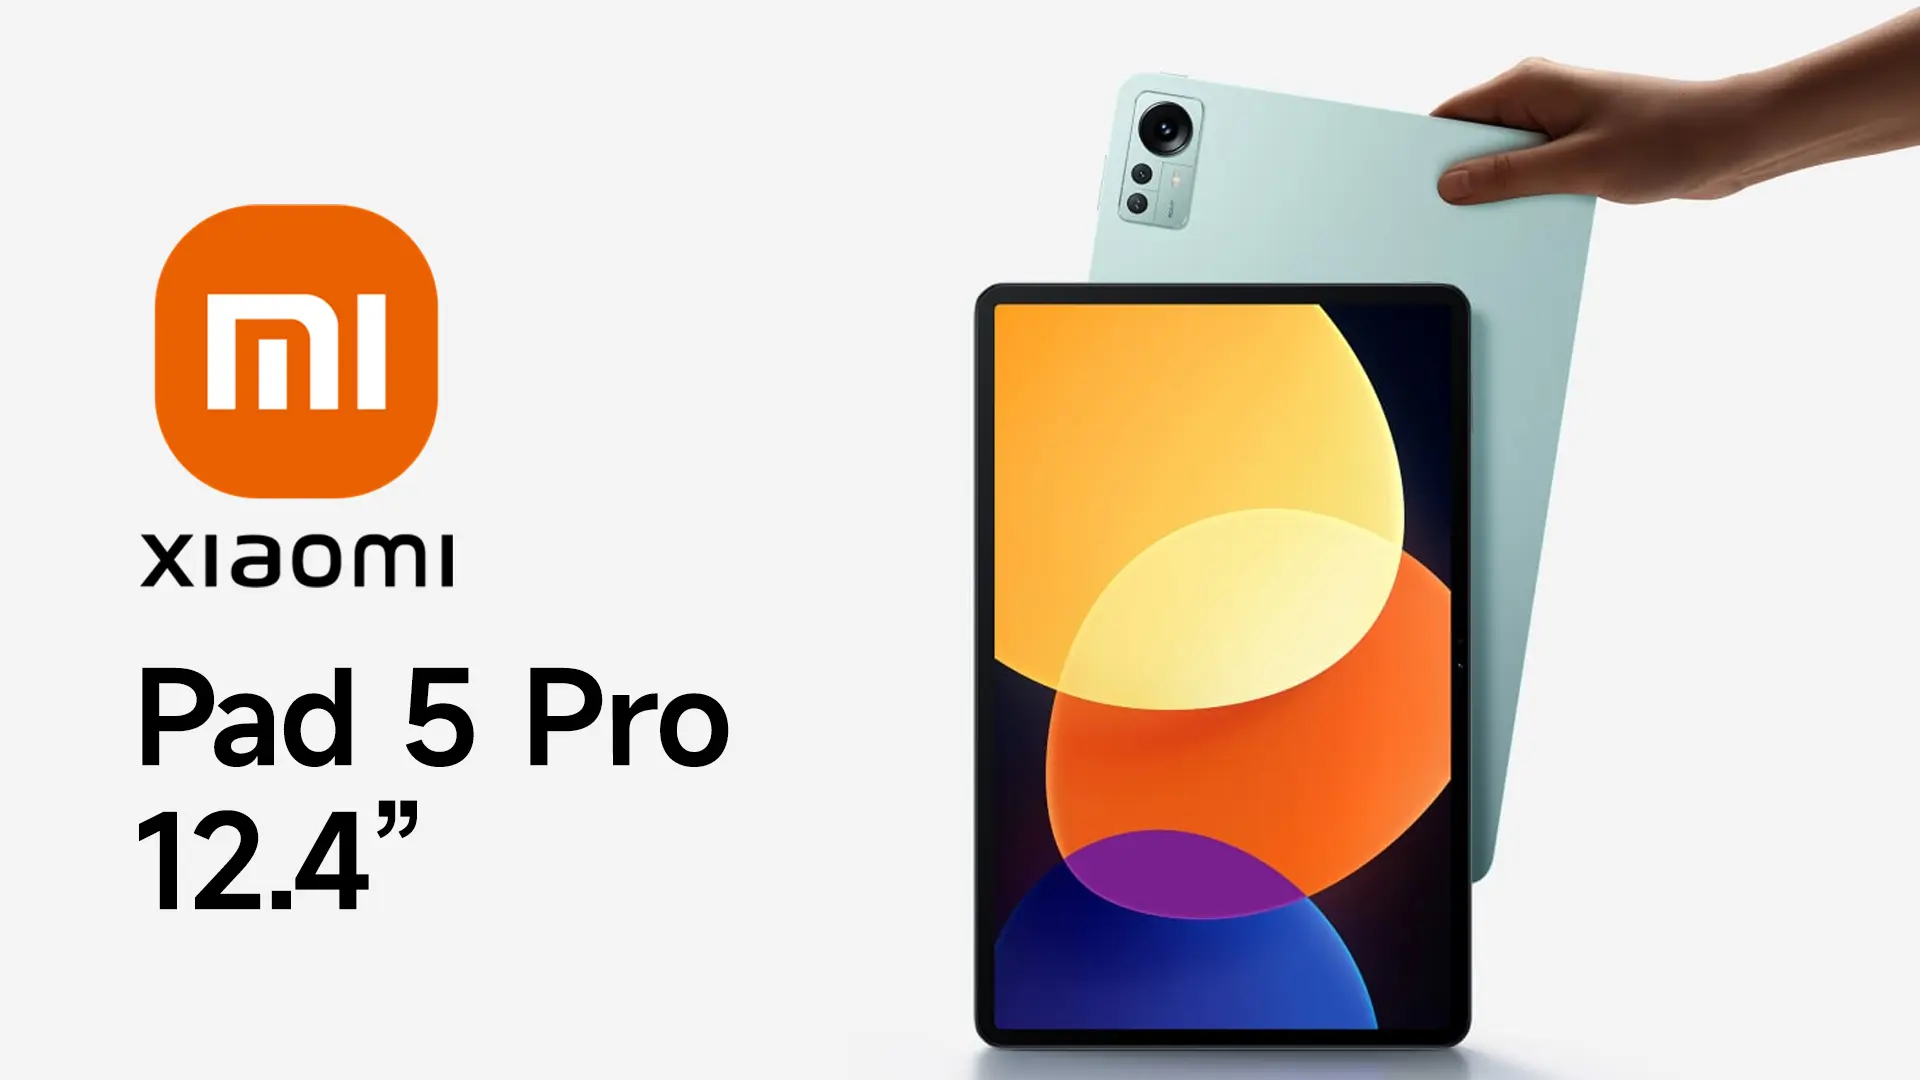 La Mi Pad 5 4G recibe un lanzamiento global como la Xiaomi Pad 5 -   News